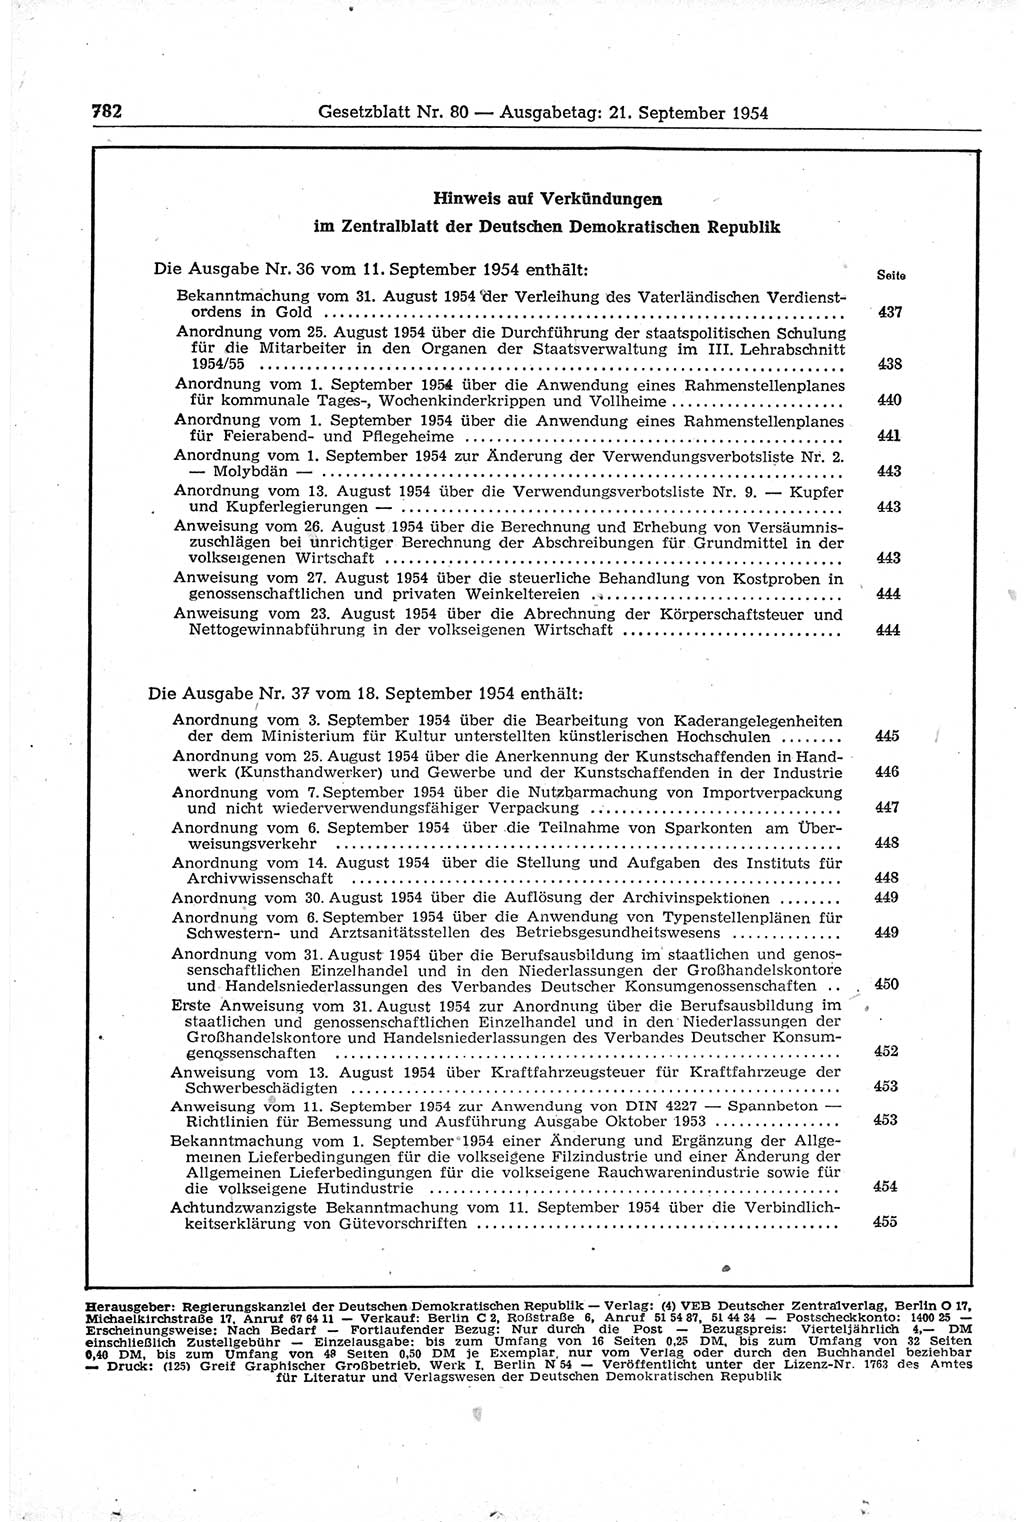 Gesetzblatt (GBl.) der Deutschen Demokratischen Republik (DDR) 1954, Seite 782 (GBl. DDR 1954, S. 782)